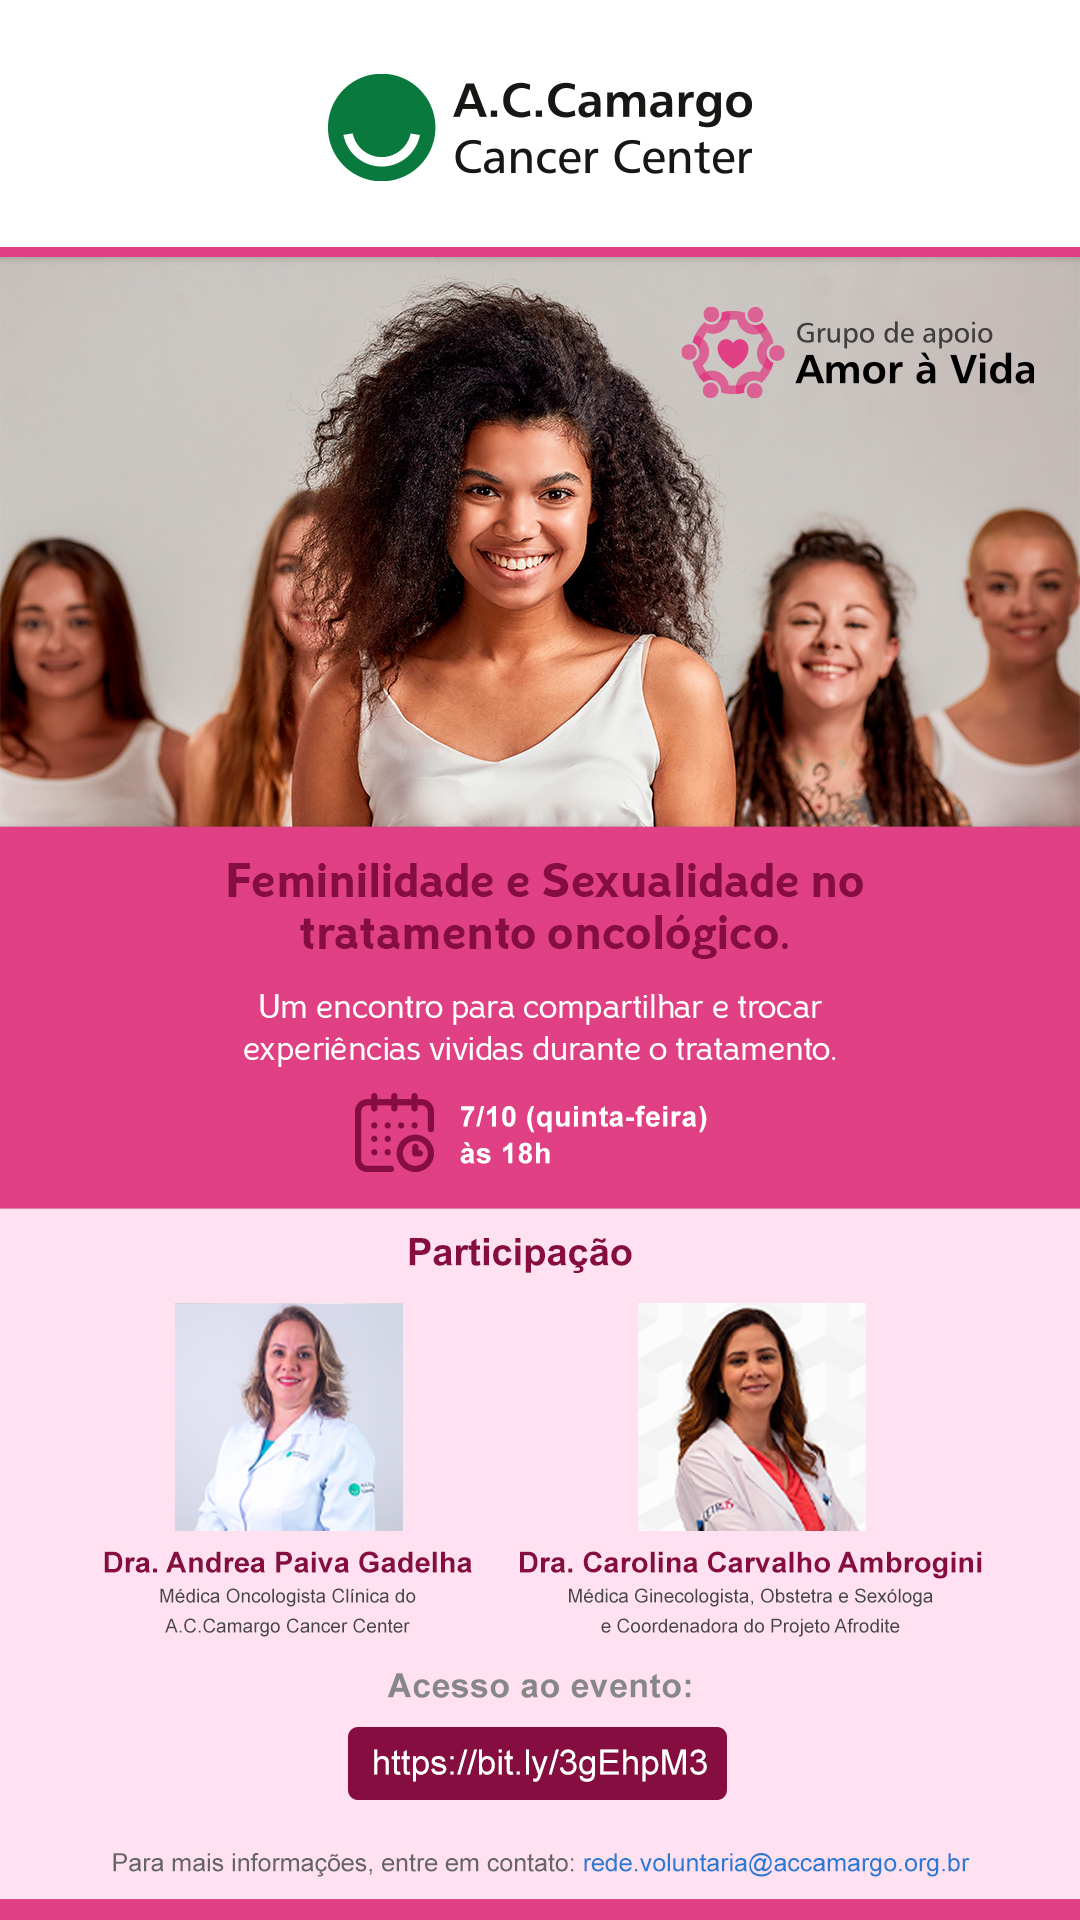 Participe do encontro virtual Amor à Vida no dia 7 de outubro de 2021, às 18h, com o tema fertilidade e sexualidade no tratamento oncológico!